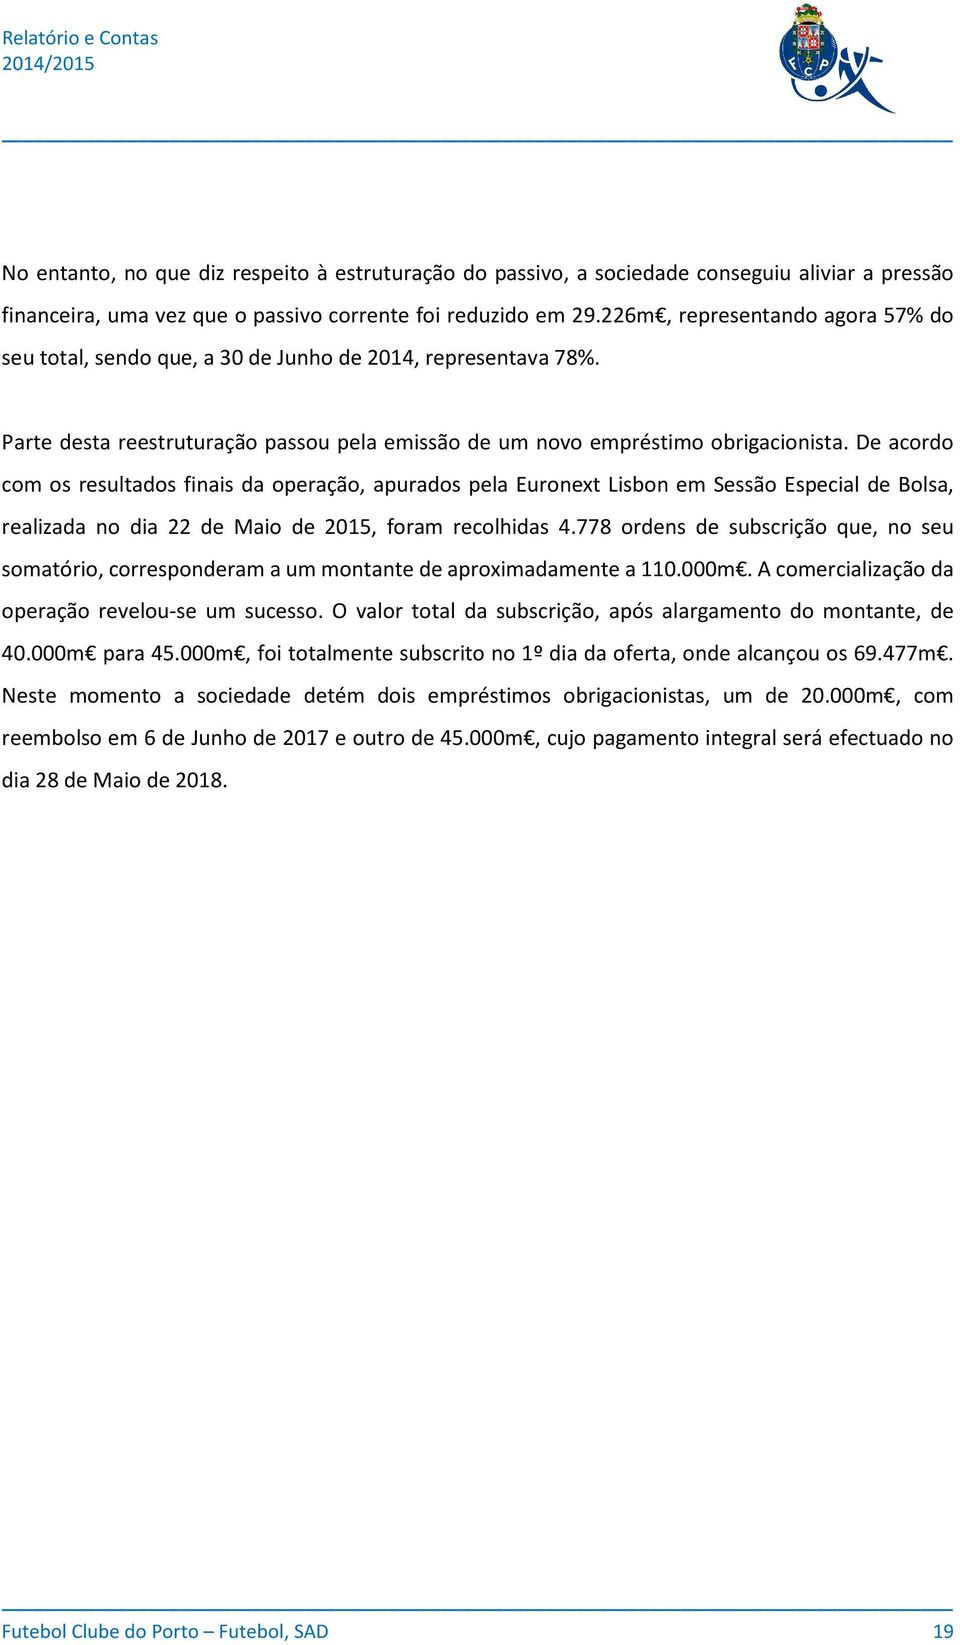 De acordo com os resultados finais da operação, apurados pela Euronext Lisbon em Sessão Especial de Bolsa, realizada no dia 22 de Maio de 2015, foram recolhidas 4.